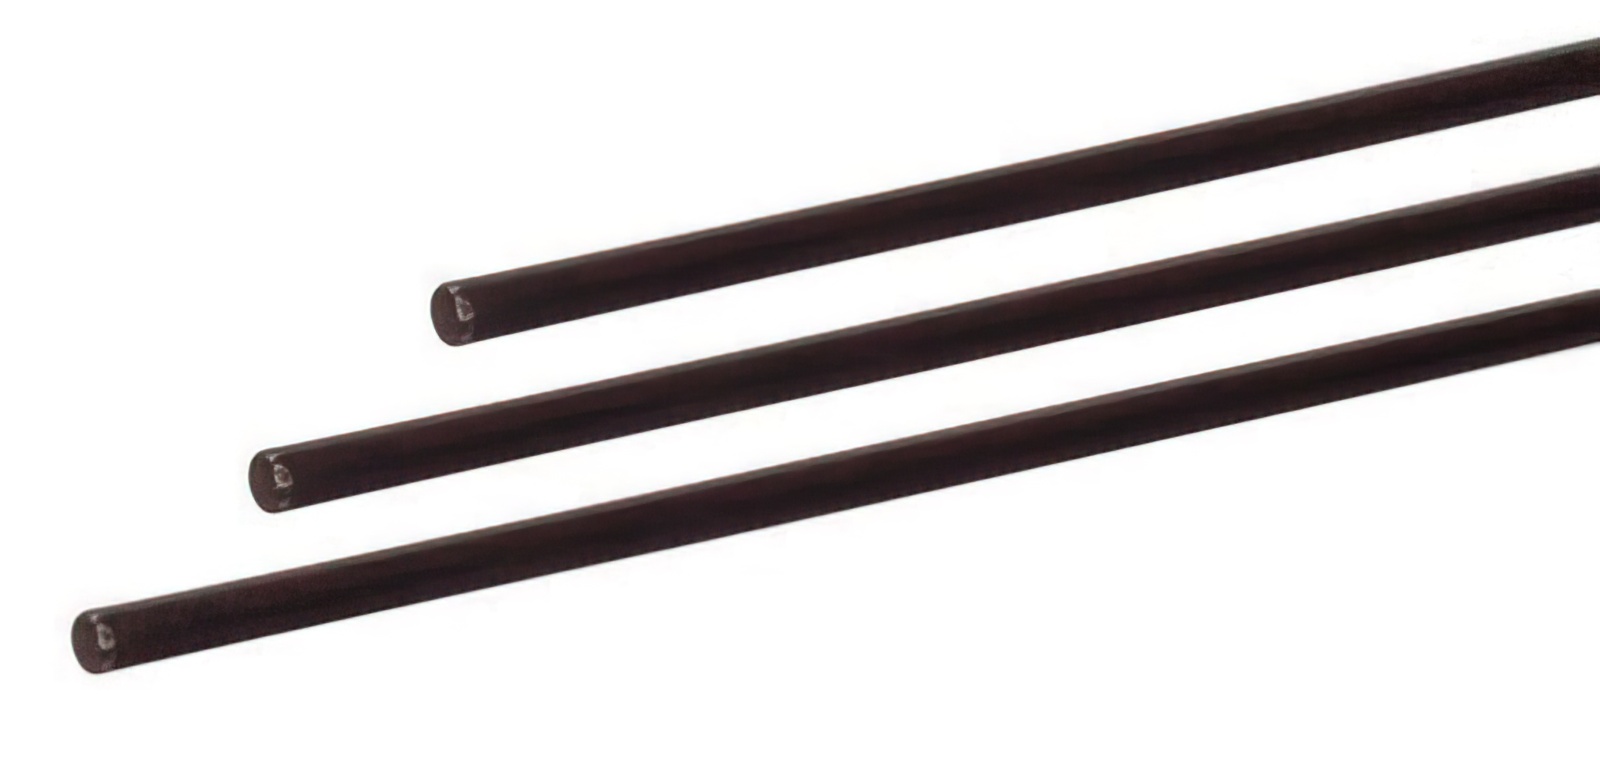 5 Stück - Gfk-Vollstab (Fiberglasstab/Glasfaserstab) 6  mm 150 cm schwarz für Drachen- und Modellbau Basteln Montagen Messebau Industrie Haushalt